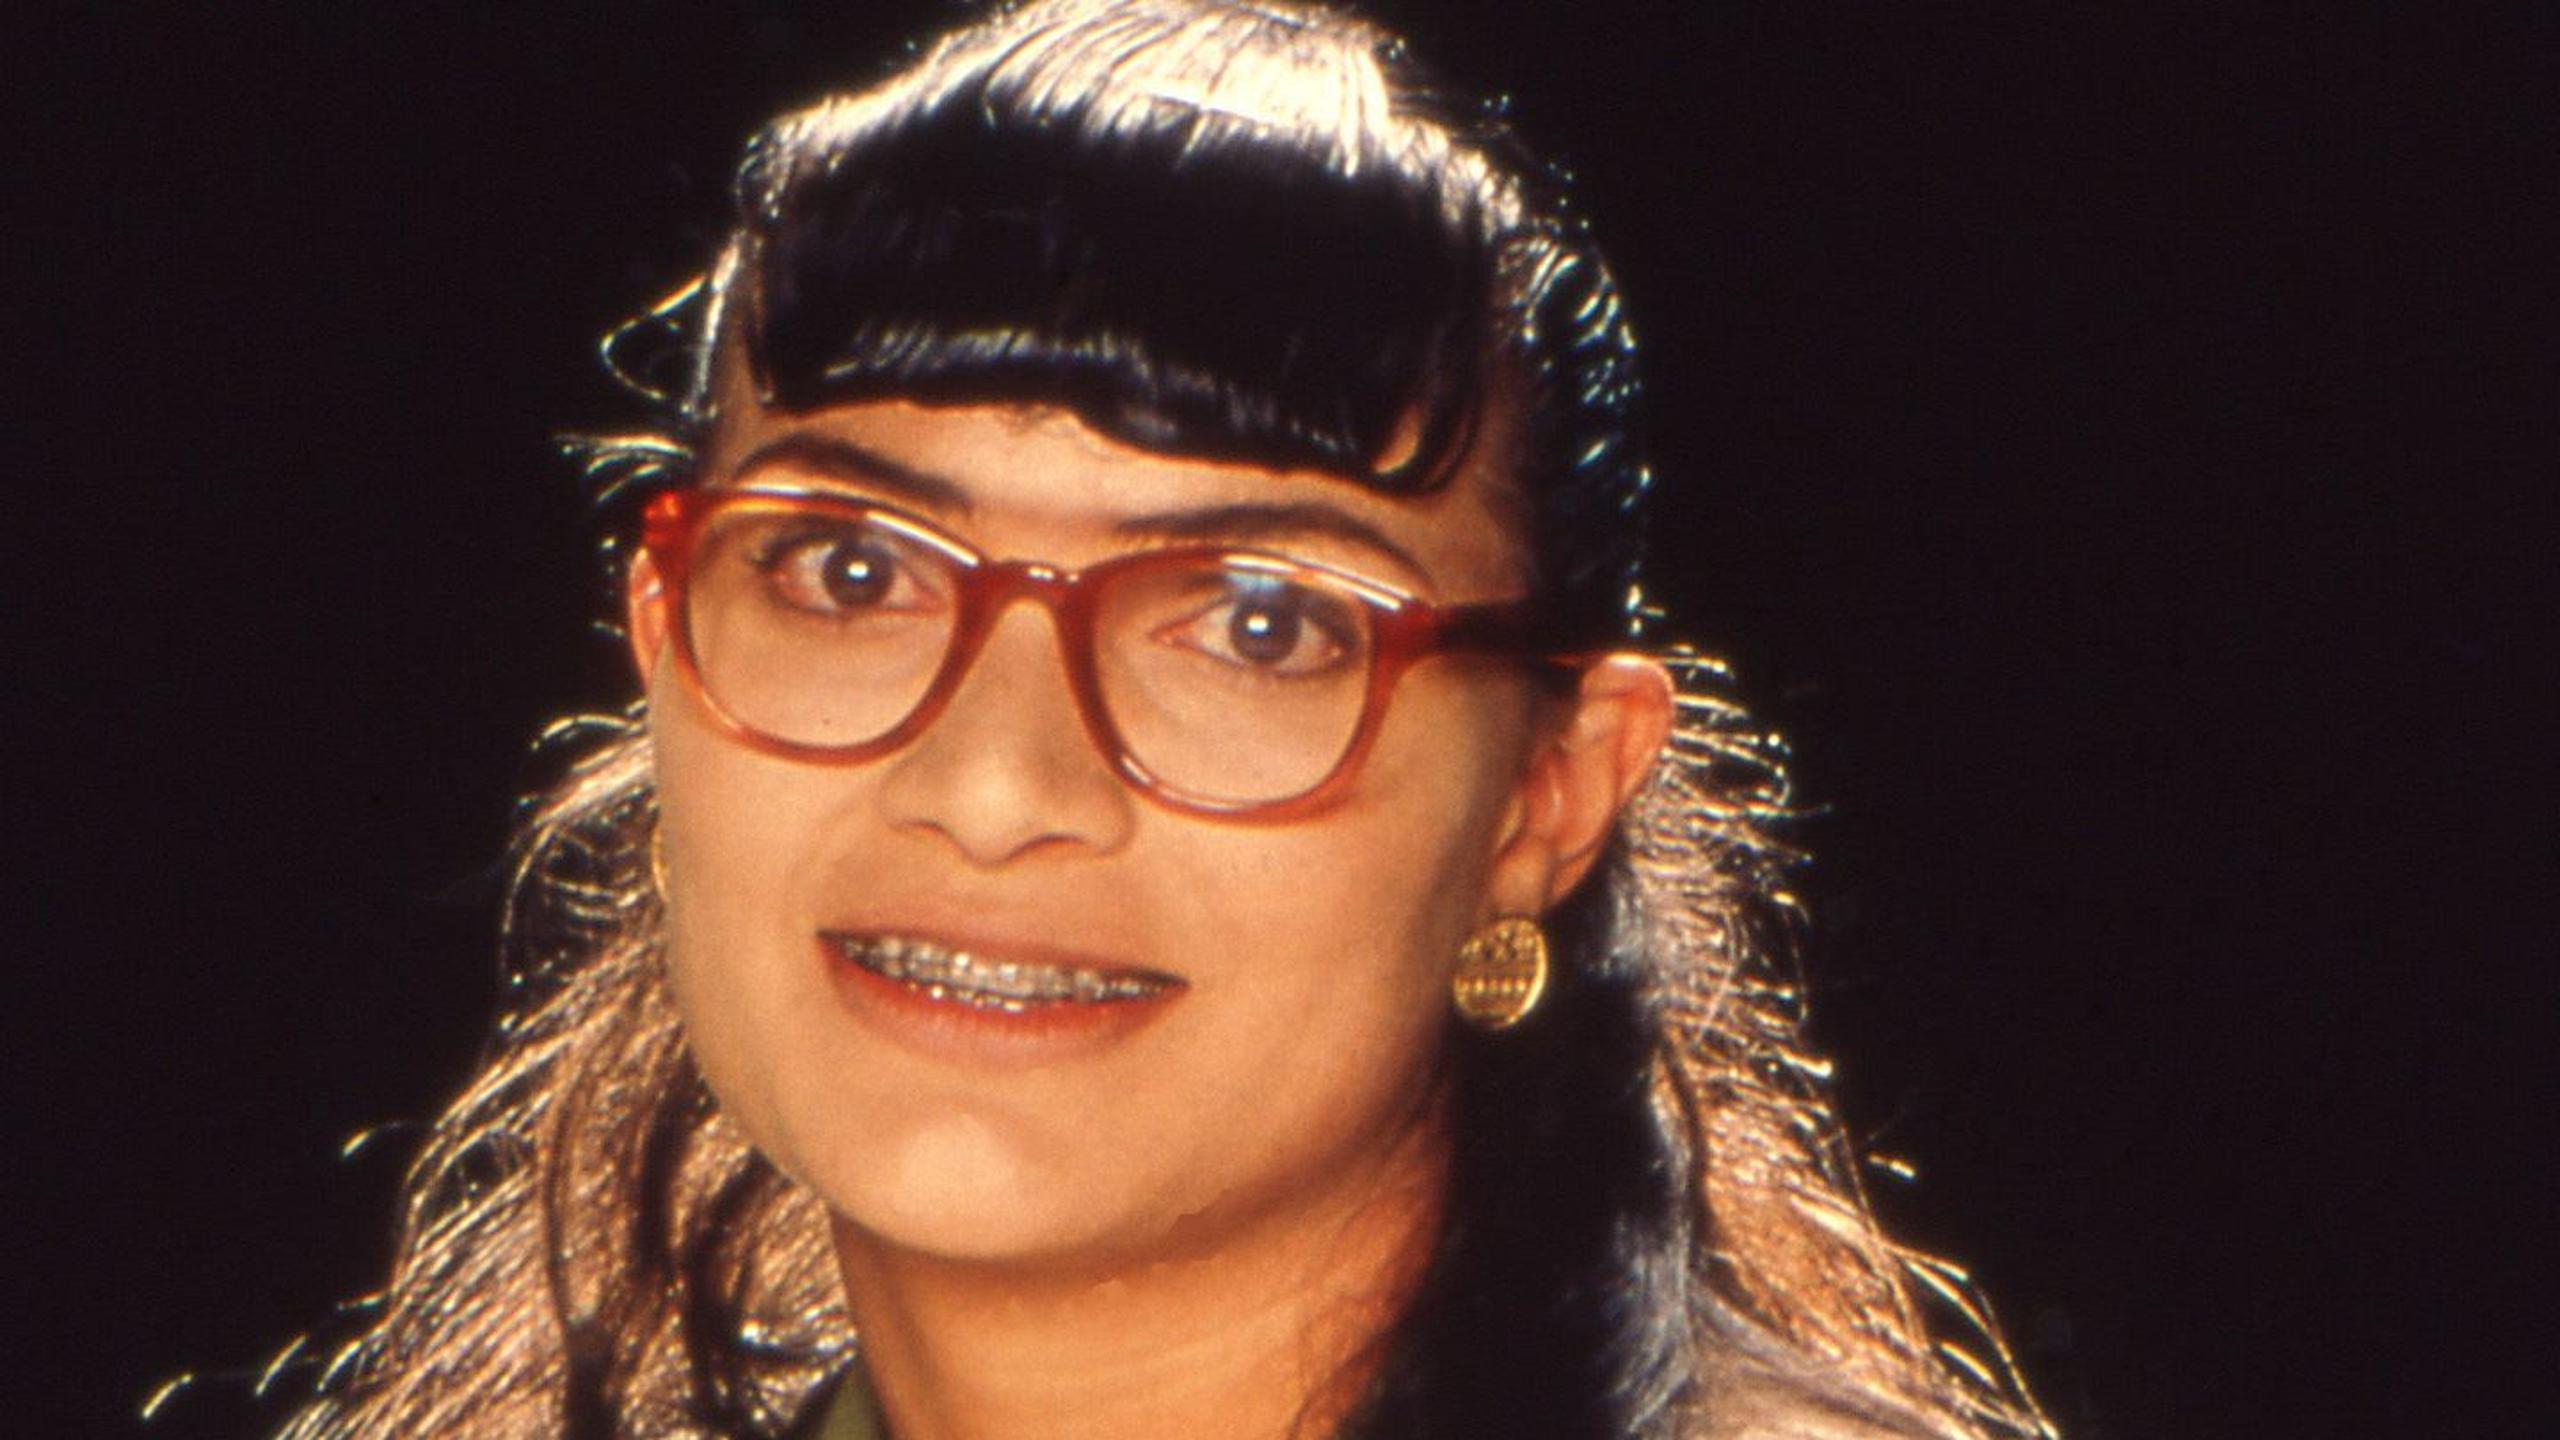 Ana María Orozco, protagonista de la telenovela “Yo soy Betty, la fea” estuvo casada Julián Arango, un compañero de reparto.